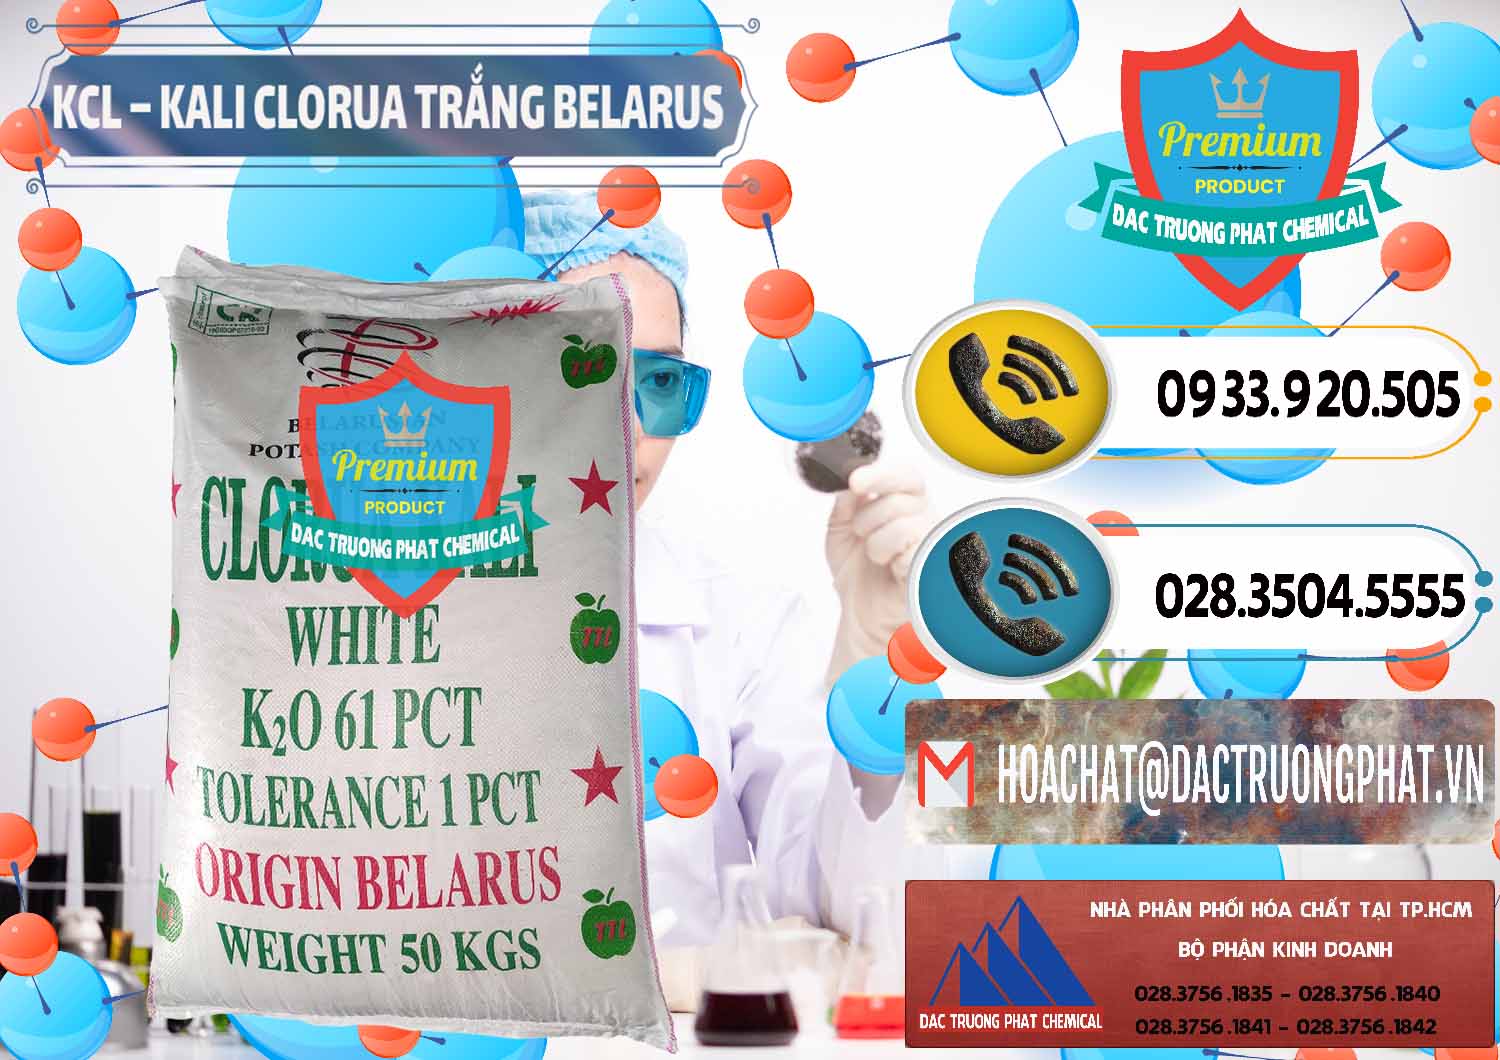 Công ty bán - phân phối KCL – Kali Clorua Trắng Belarus - 0085 - Nơi chuyên cung cấp & bán hóa chất tại TP.HCM - hoachatdetnhuom.vn